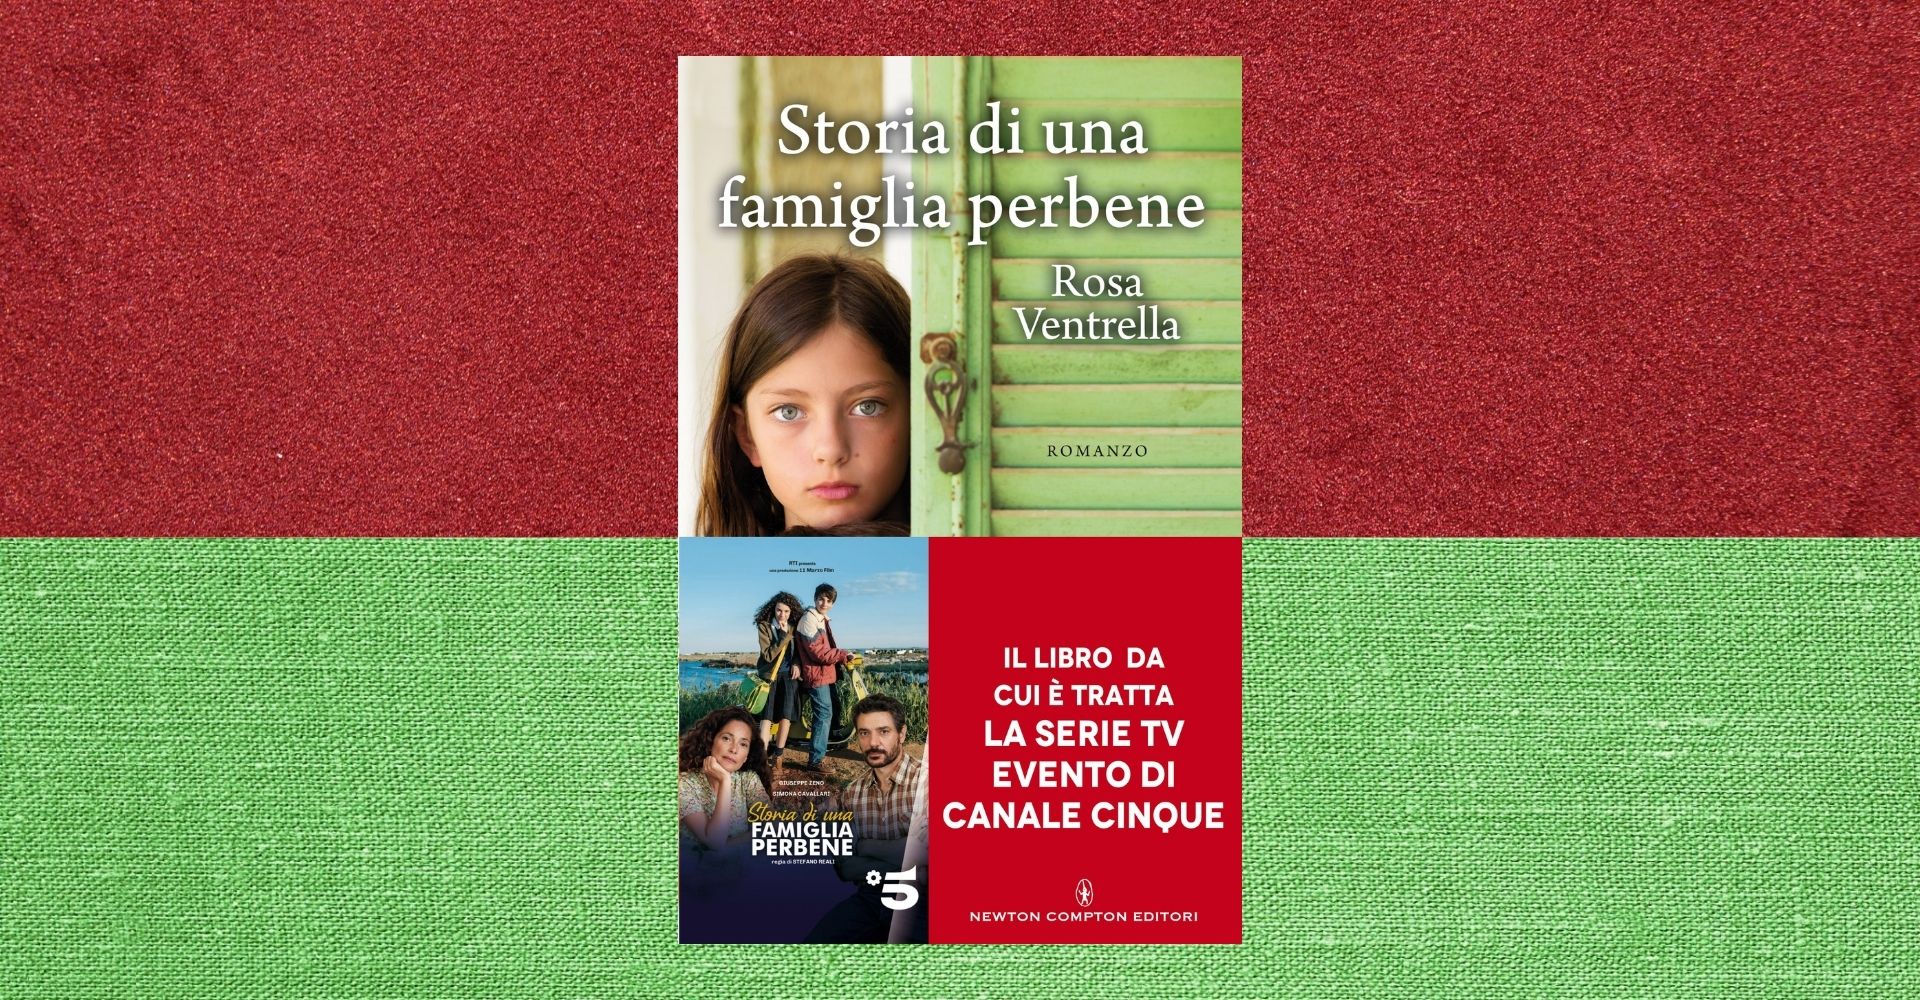 "Storia di una famiglia perbene", dal romanzo alla fiction su Canale 5: "Sorta di Romeo e Giulietta in chiave moderna"